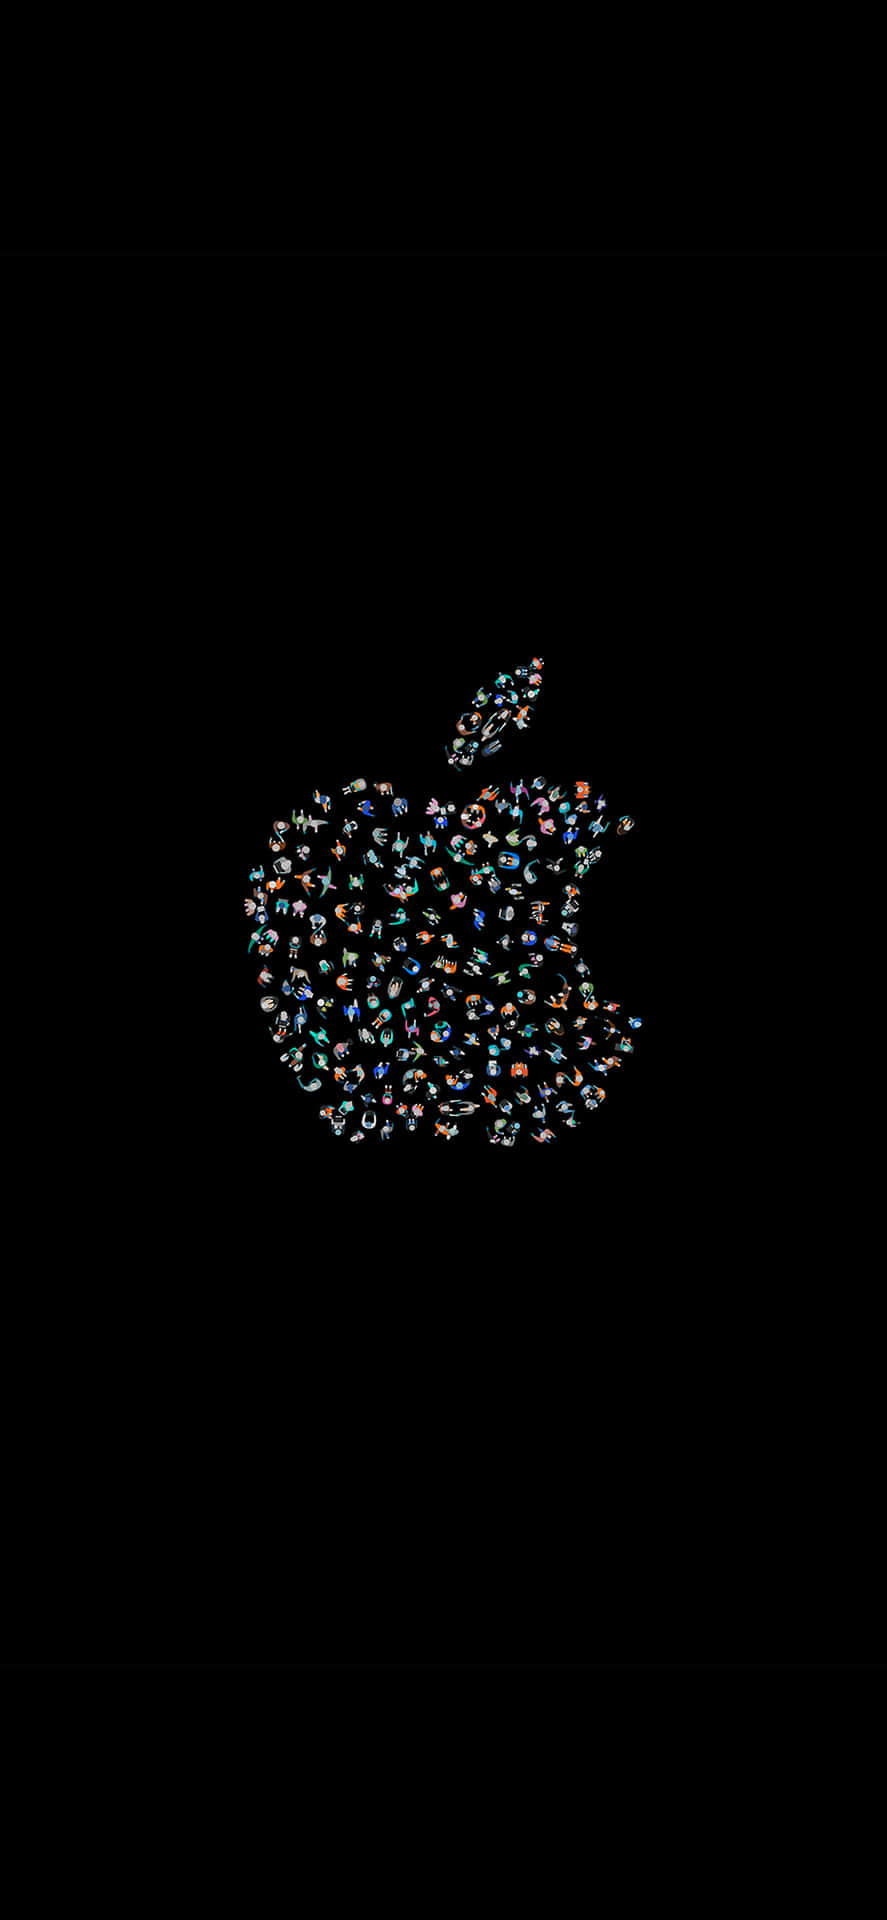 Innovativeslogo, Beeindruckender Apple Hd-bildschirm Für Das Iphone. Wallpaper